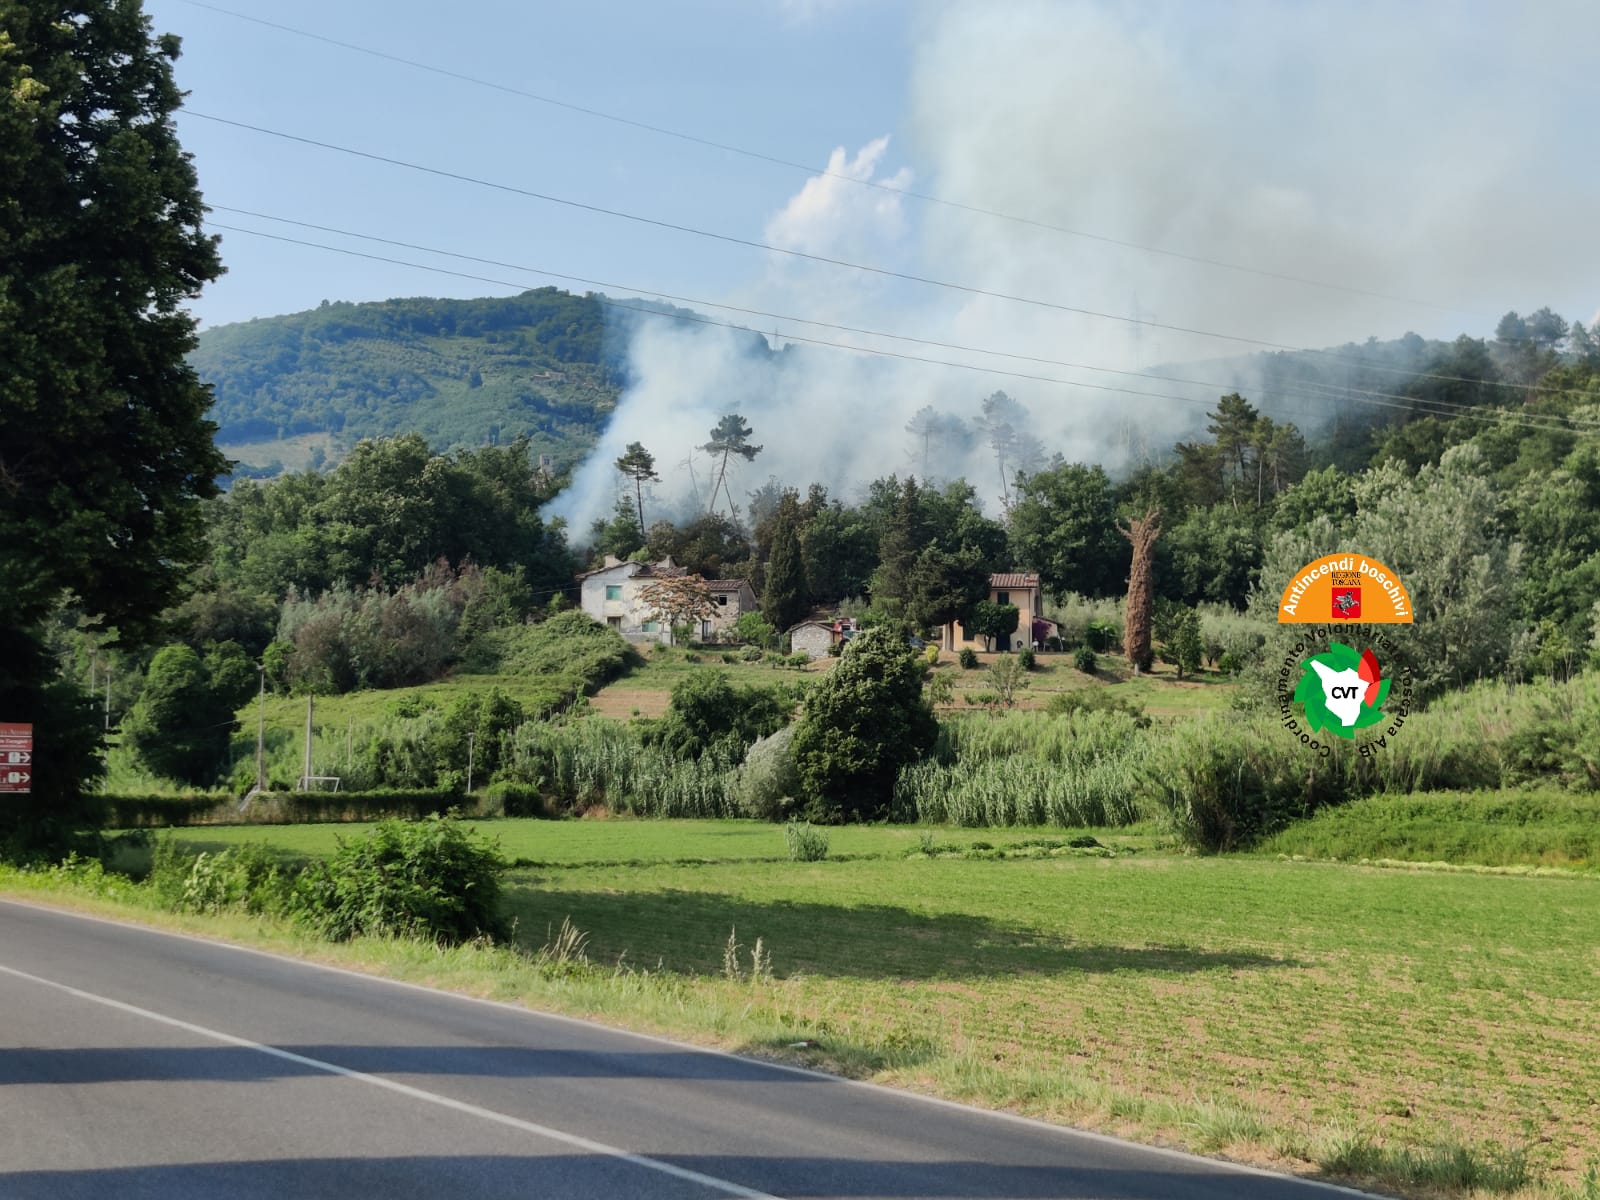 Incendio in corso in località Fornace nel comune di Lucca, due elicotteri in azione